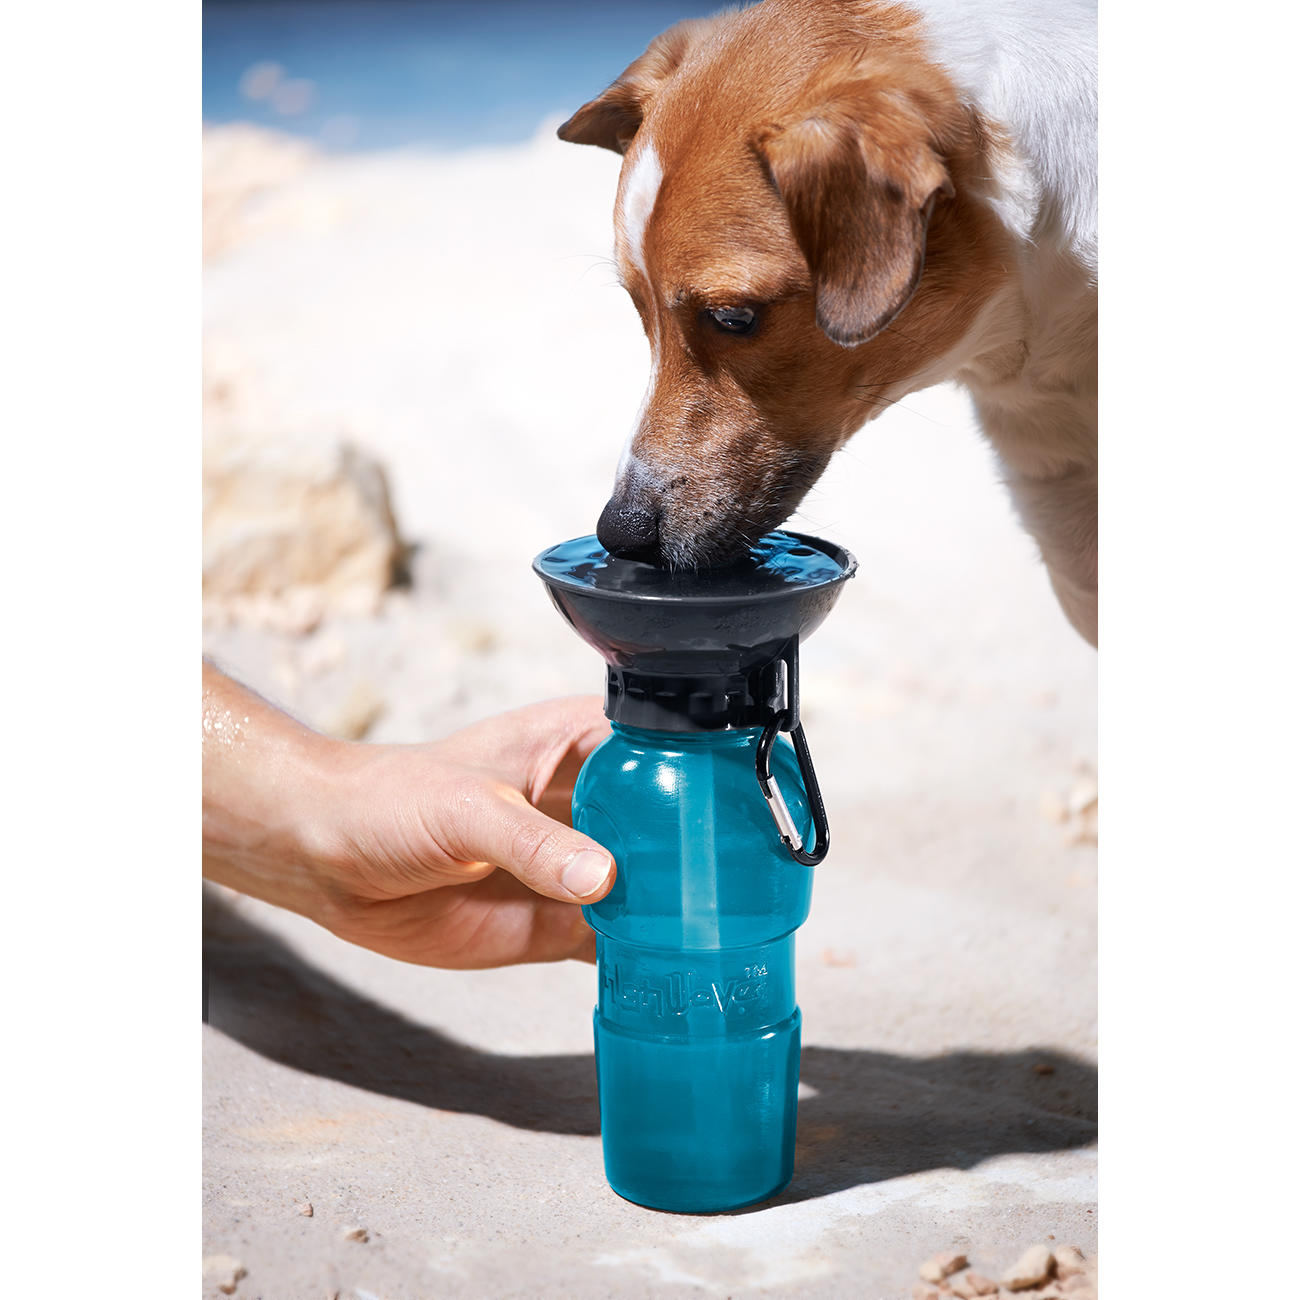 inkl Blau 100% Auslaufsicher Innovative 550 ML Hundetrinkflasche für unterwegs Trinkflasche Hund für unterwegs Premium Trinkflasche Hund Zahnbürste & Pfeife NEU 3er GESCHENKESET 